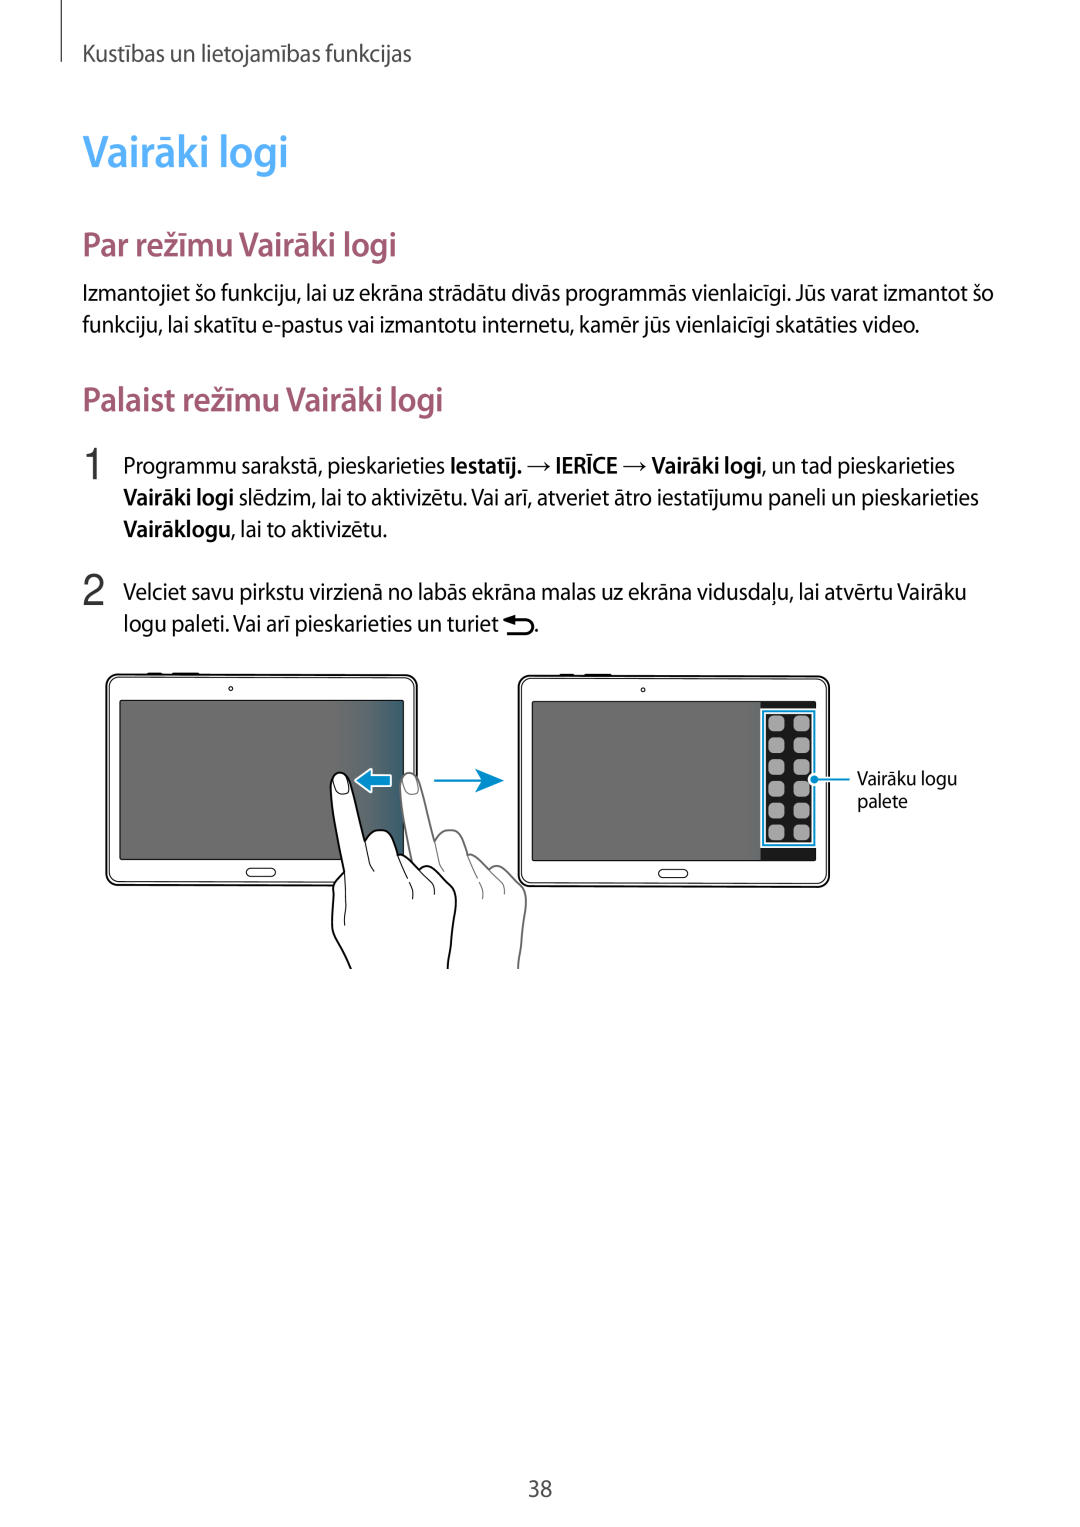 Samsung SM-T800NHAASEB manual Par režīmu Vairāki logi, Palaist režīmu Vairāki logi, Kustības un lietojamības funkcijas 